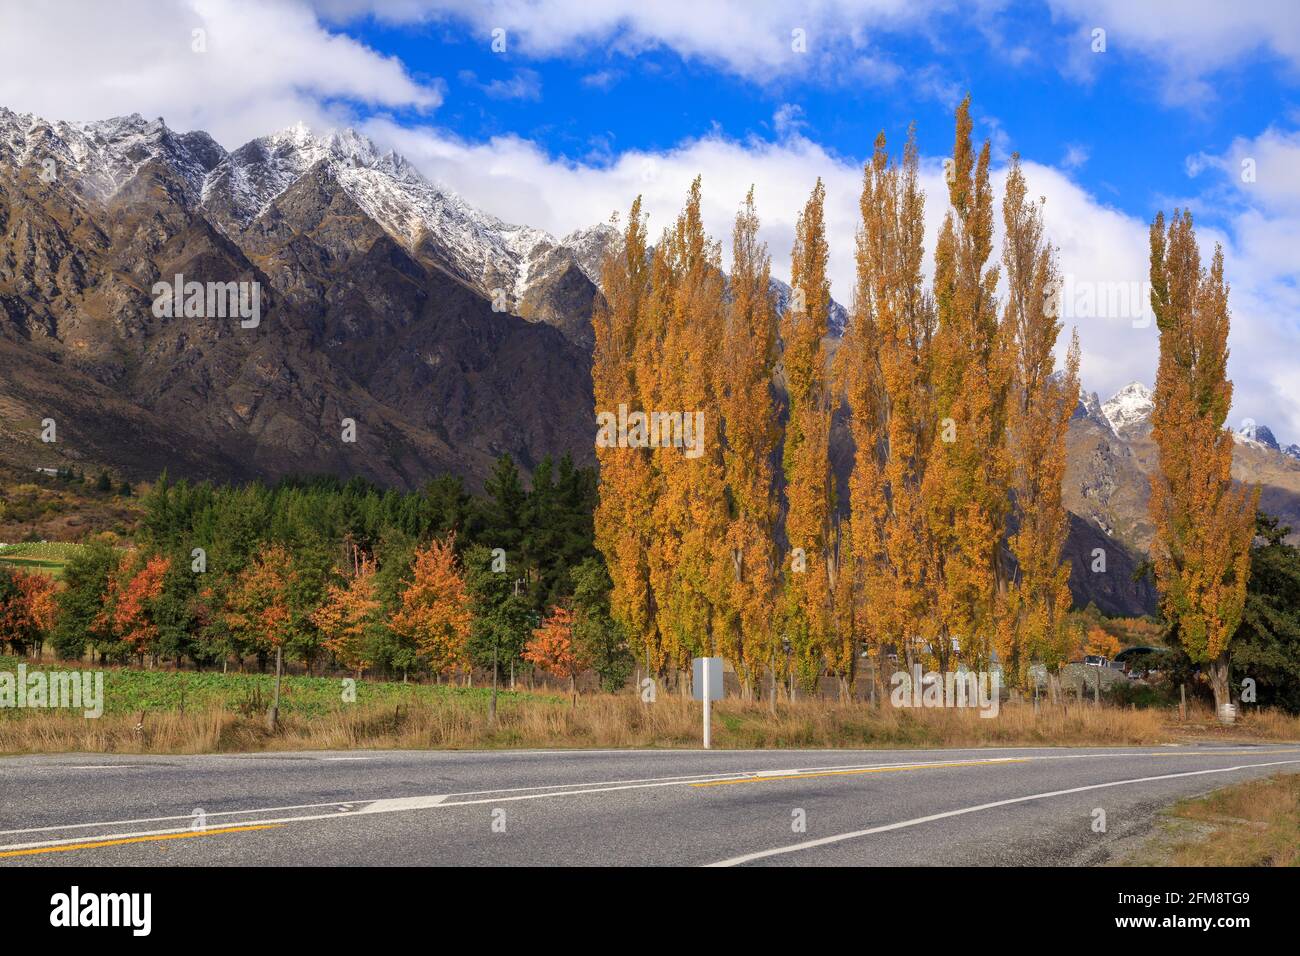 Le Remarkables, una catena montuosa nell'Isola del Sud della Nuova Zelanda. In primo piano è una strada e una fila di alberi di pioppo autunno Foto Stock